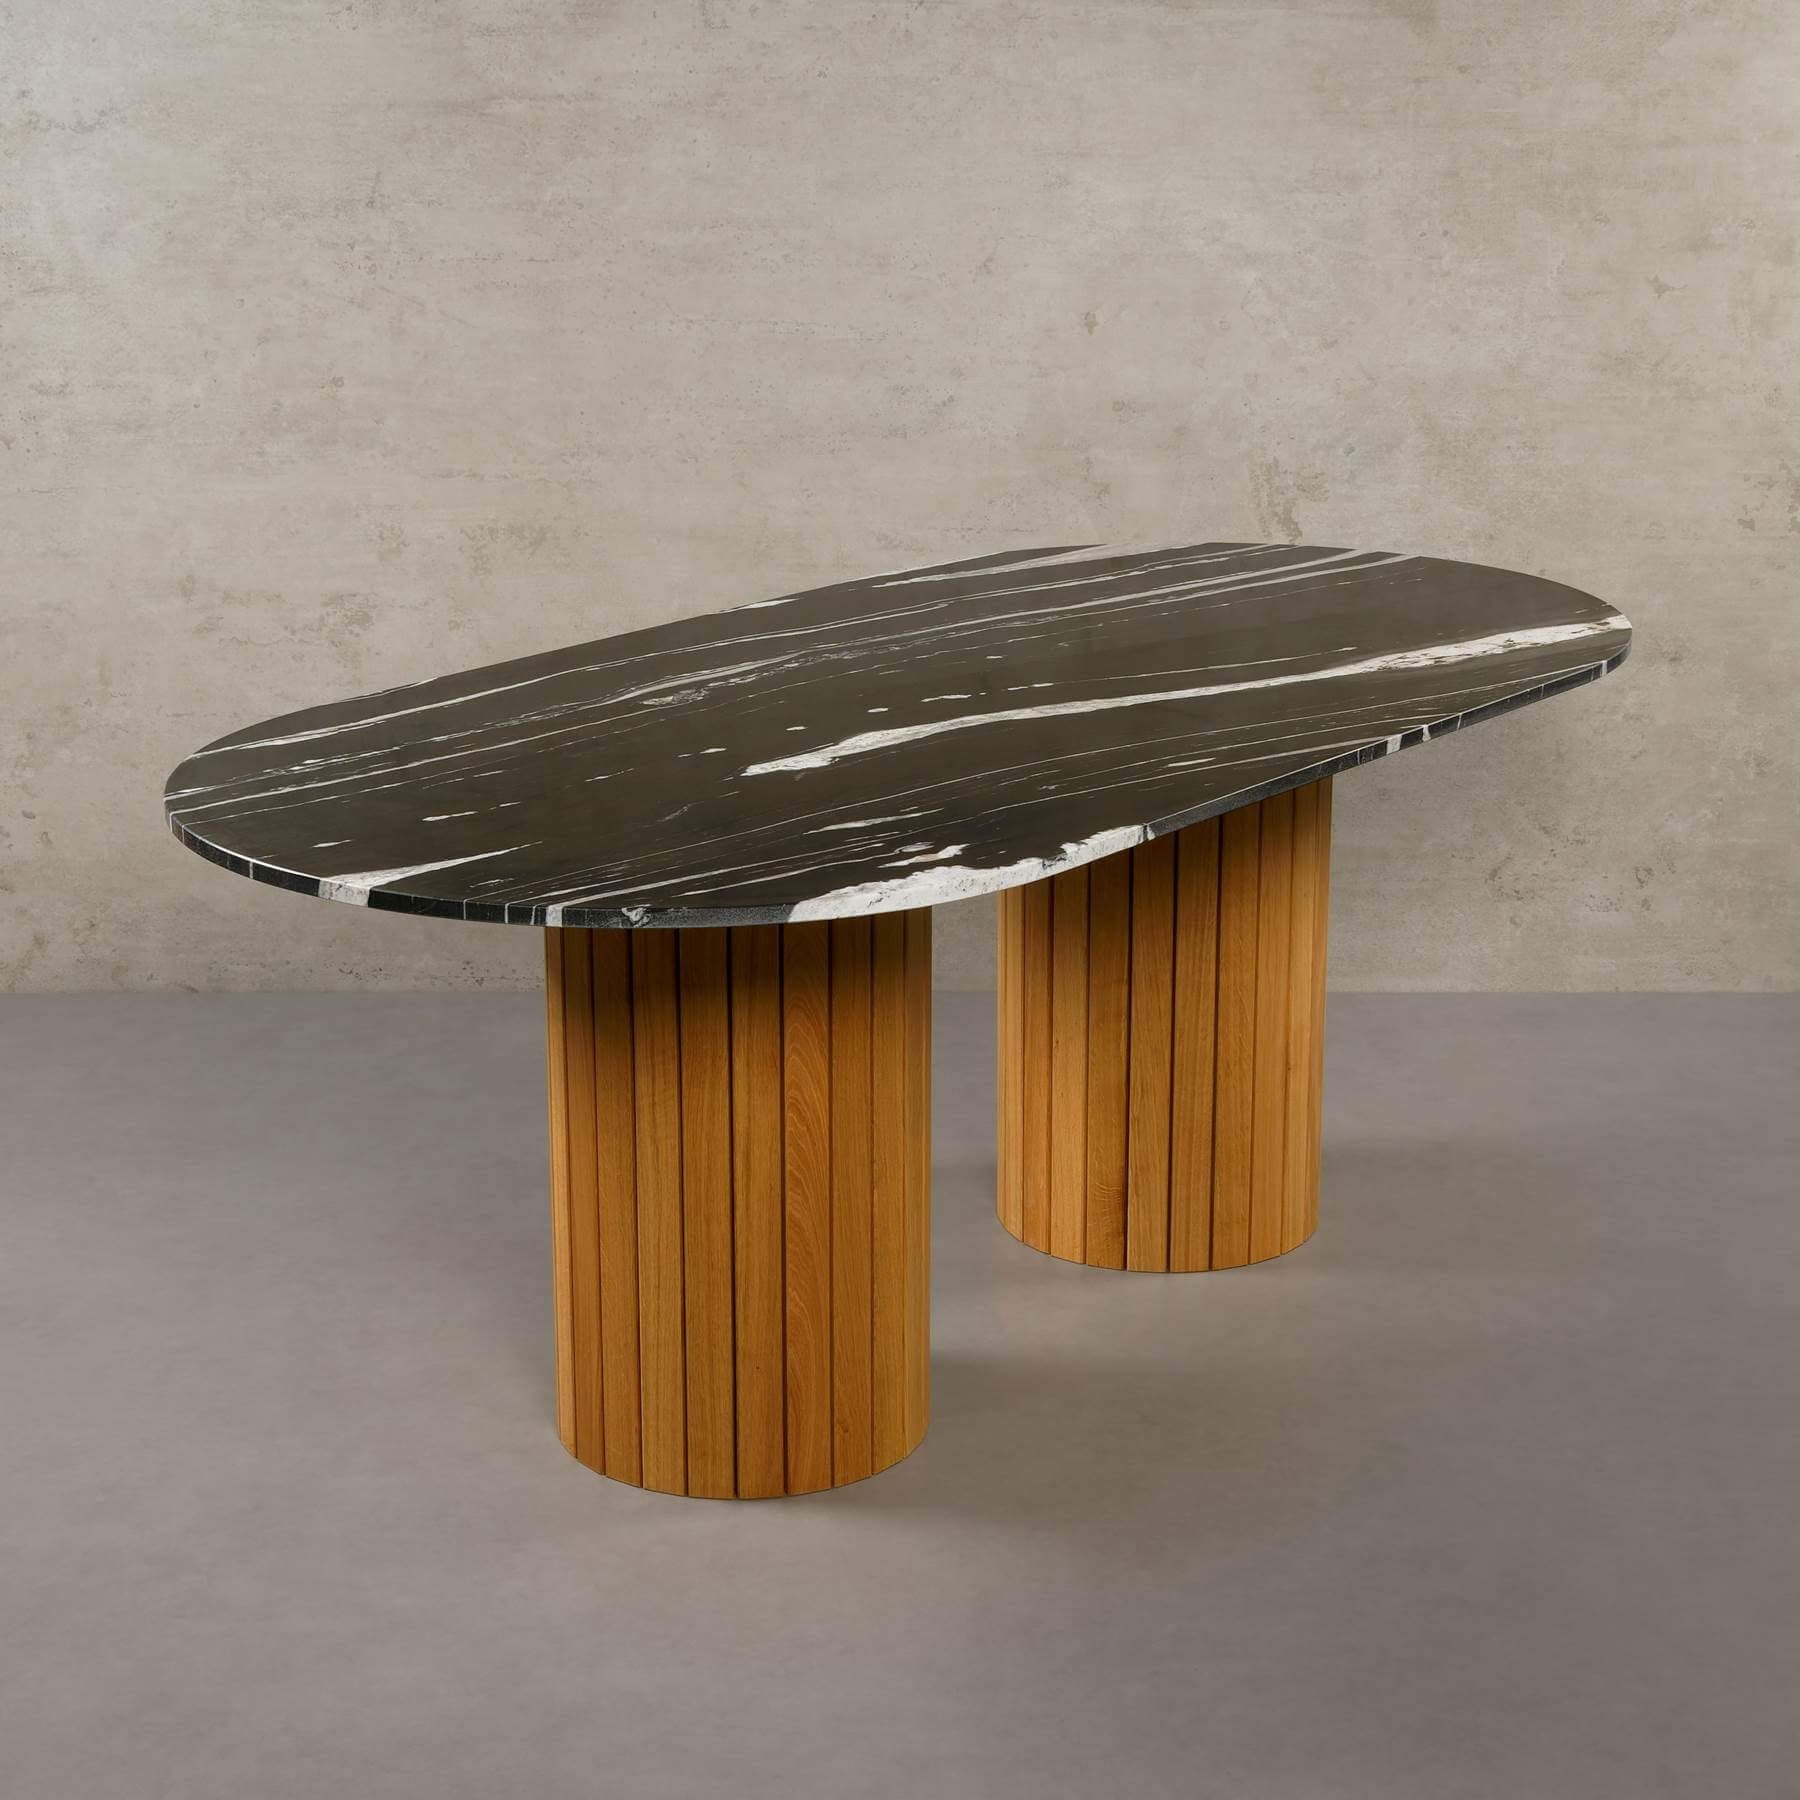 MAGNA Atelier Esstisch Montana mit ECHTEM MARMOR, Esstisch Tisch rund, Eichenholz Gestell, 200x100x76cm Copacabana